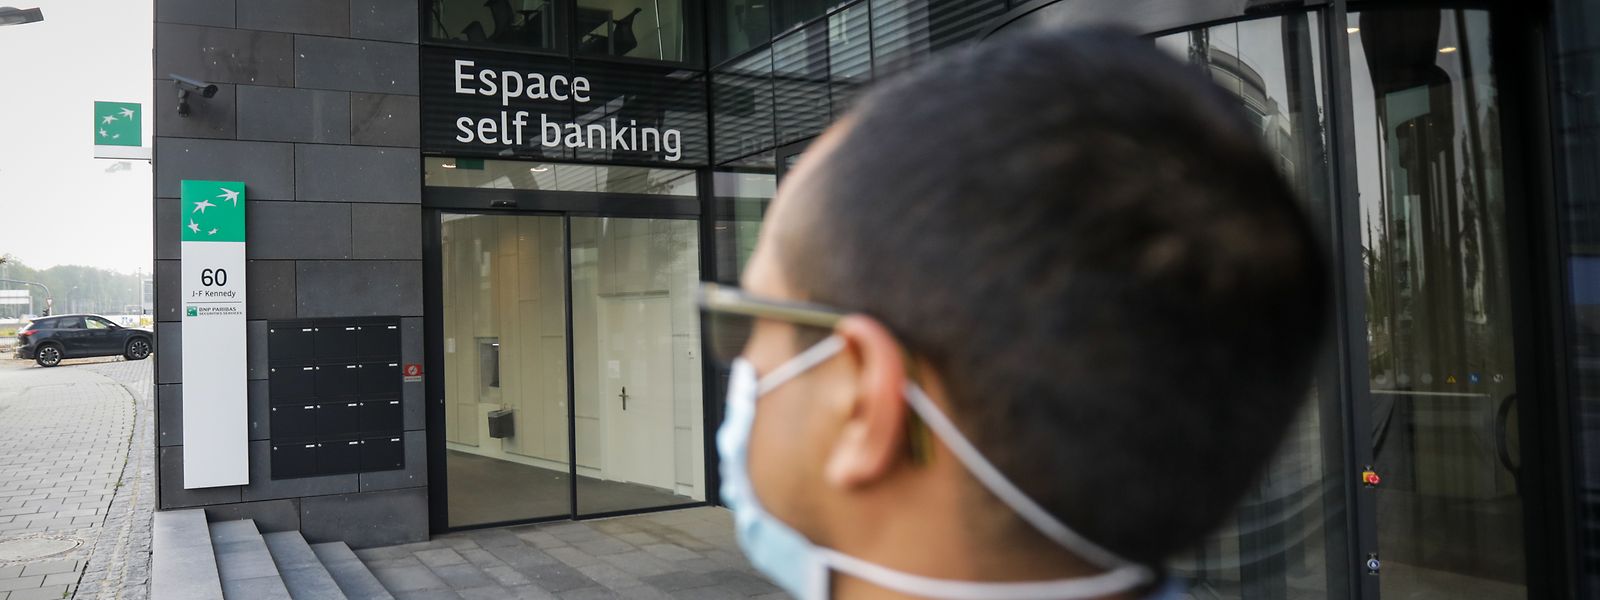 Früher wäre es verboten gewesen, doch heute heißt es beim Betreten einer Bank normalerweise: Maske auf. Der Mund-Nasen-Schutz gehört zur neuen Normalität.